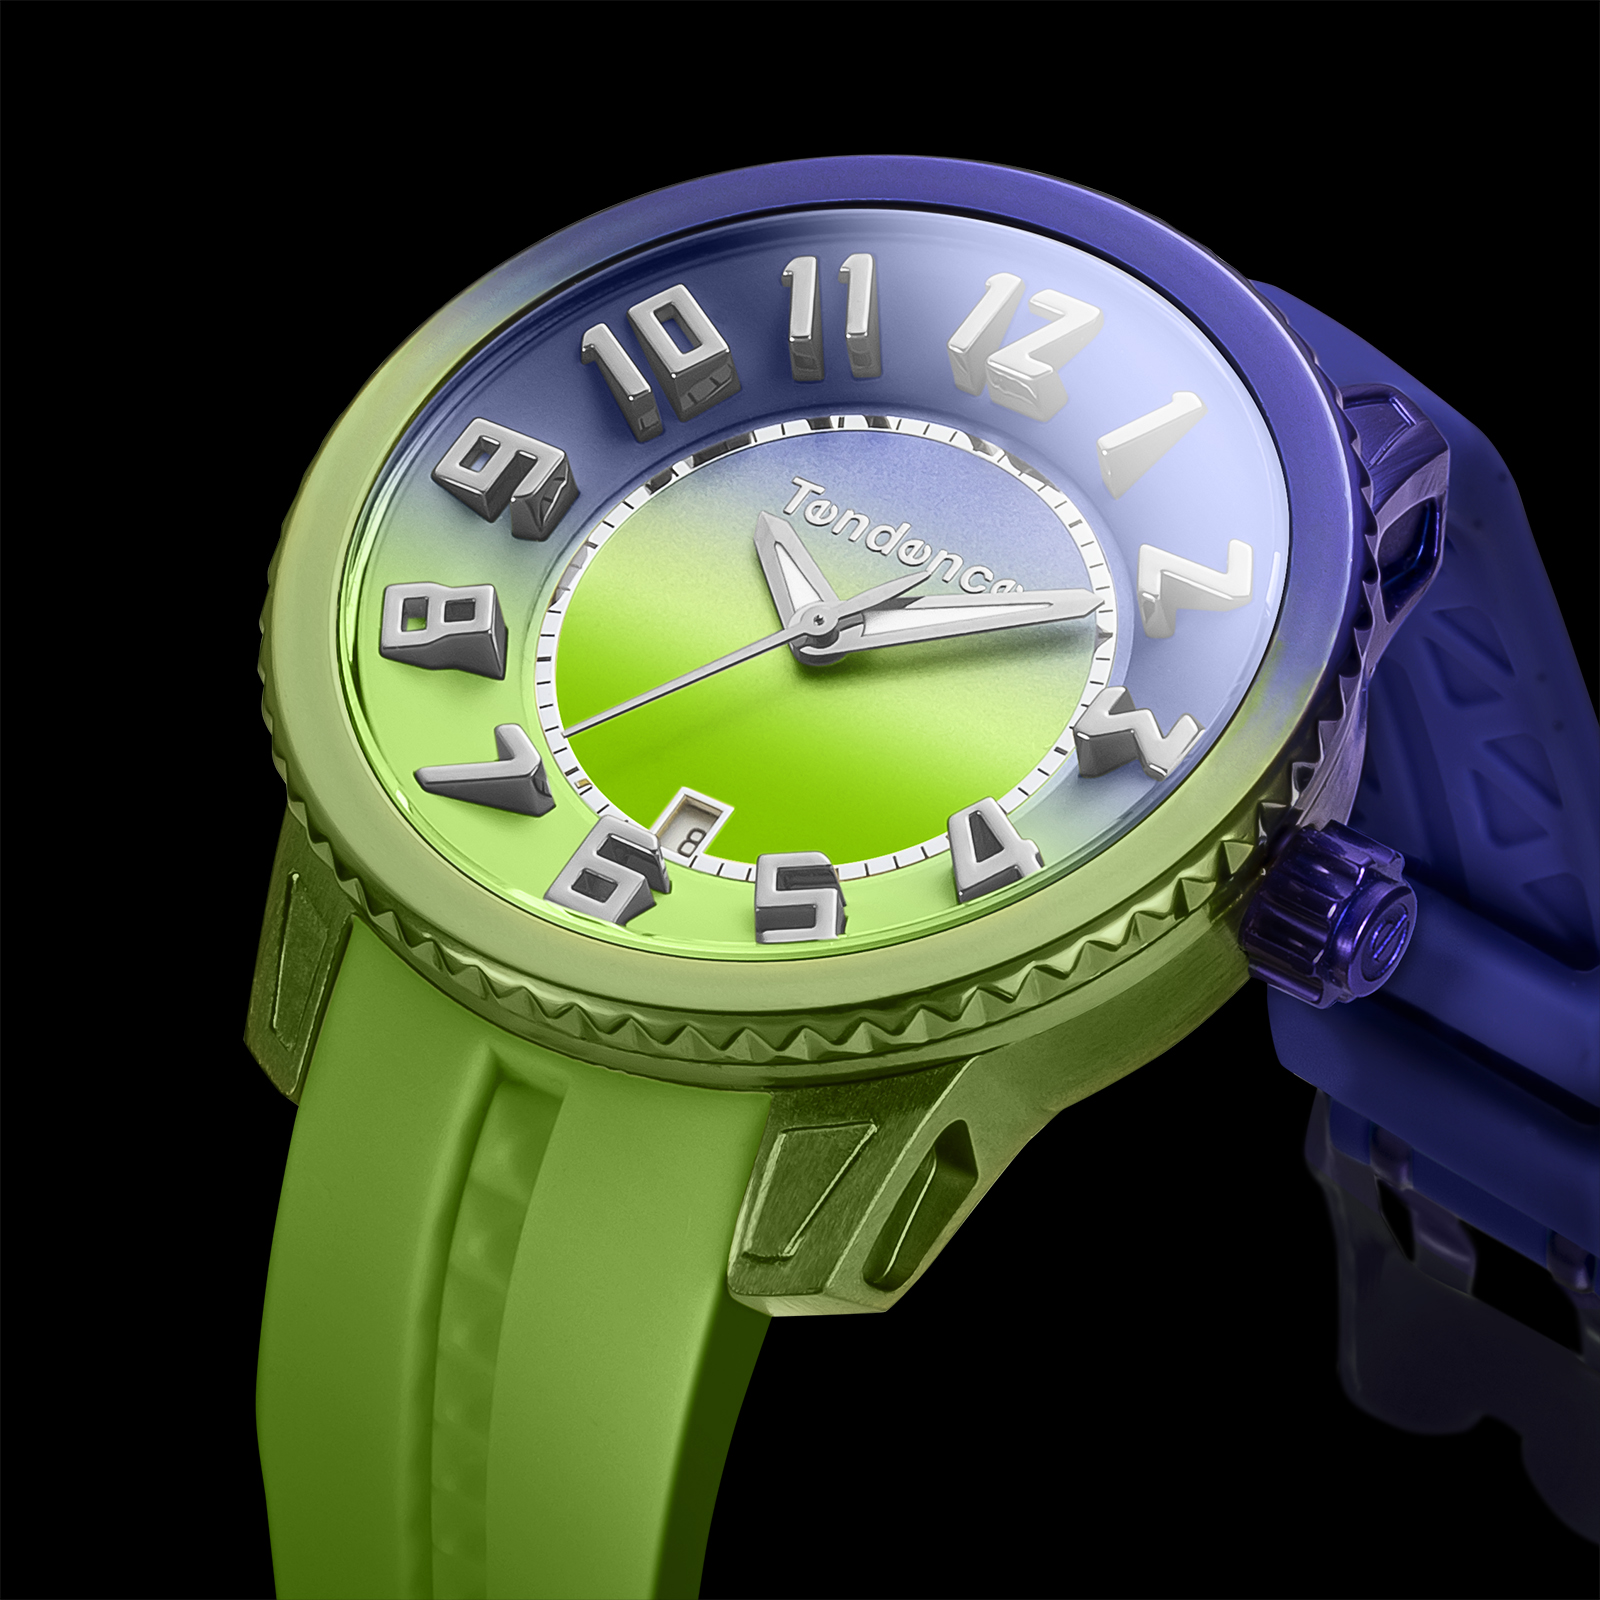 【限定】Tendence テンデンス ガリバーDX 腕時計 クロノグラフそがのテンデンス